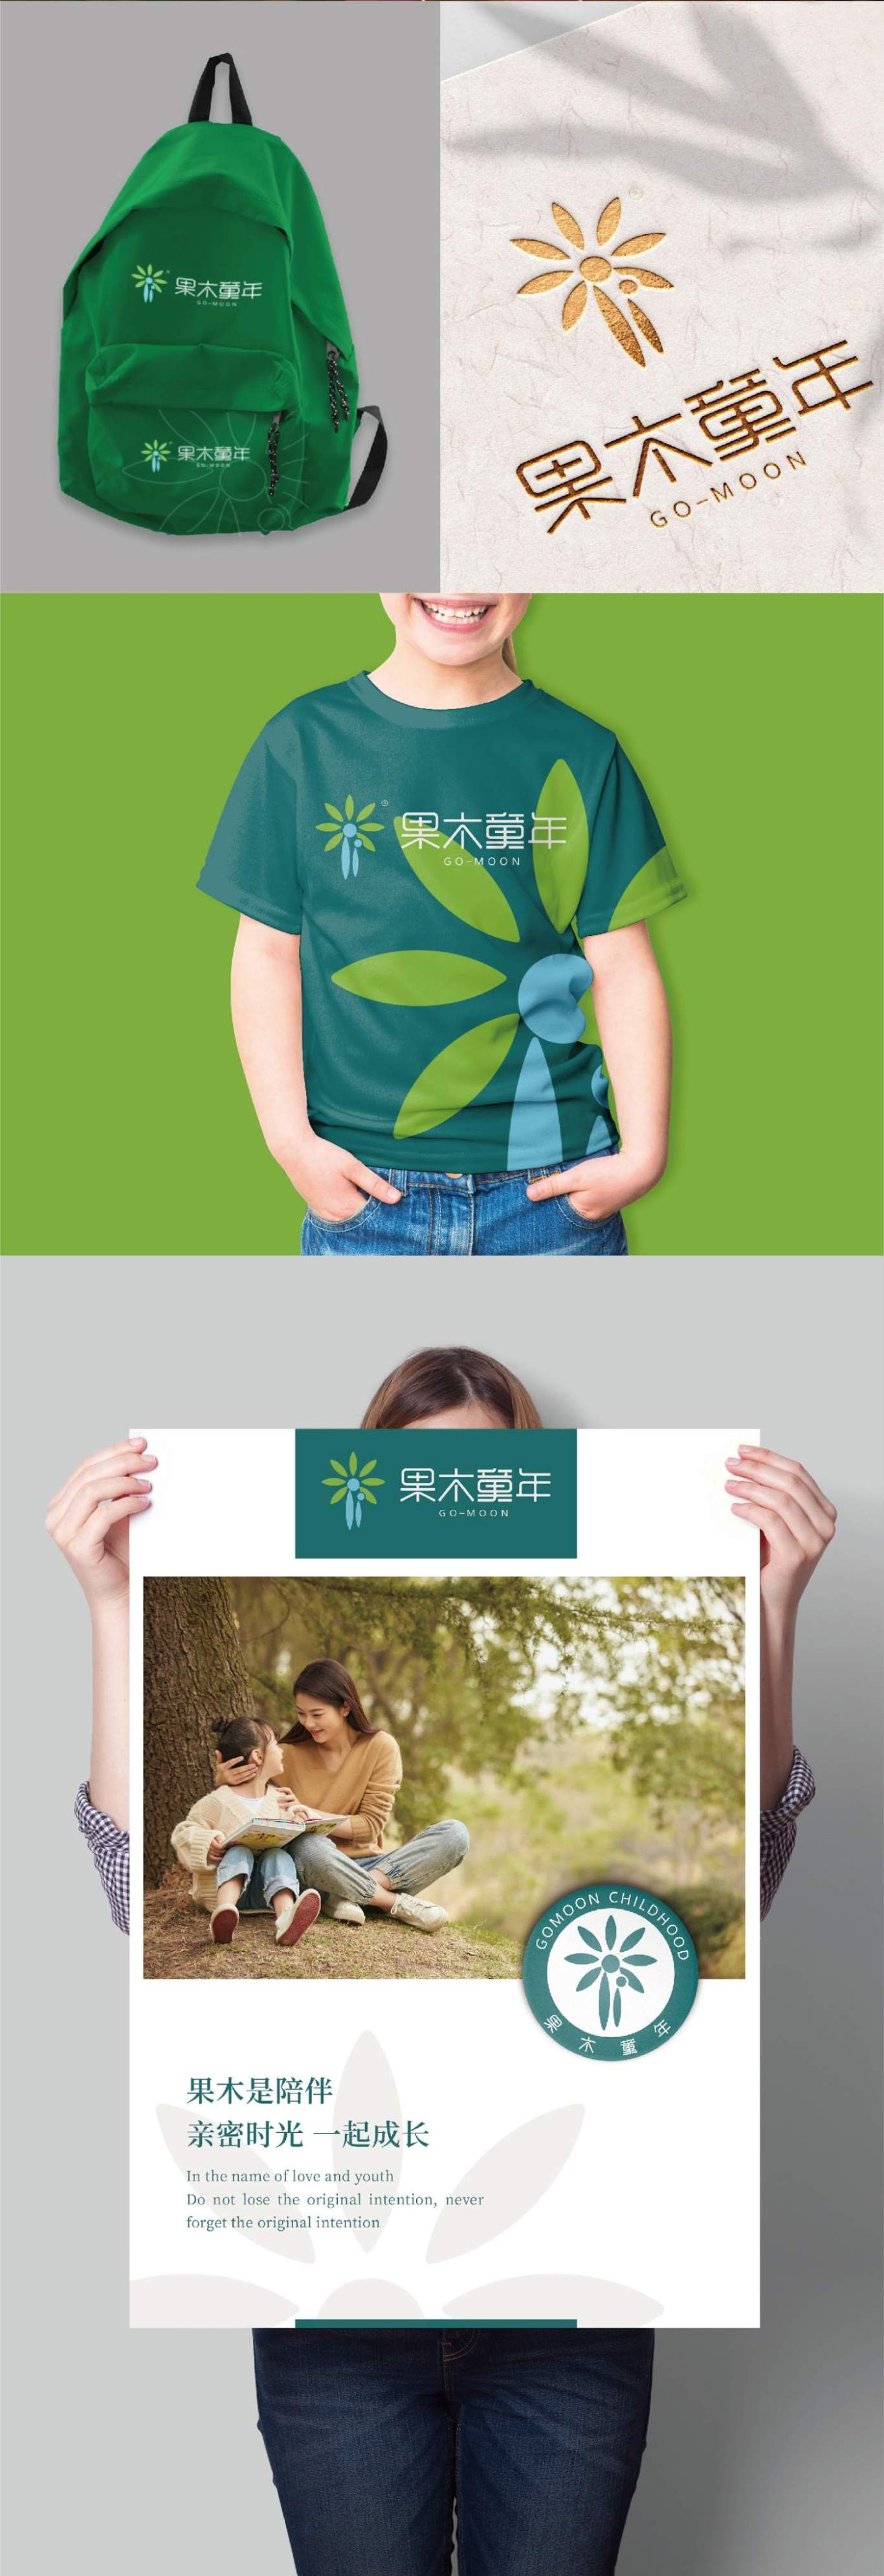 苏州果木童年儿童亲子教育logo设计图2